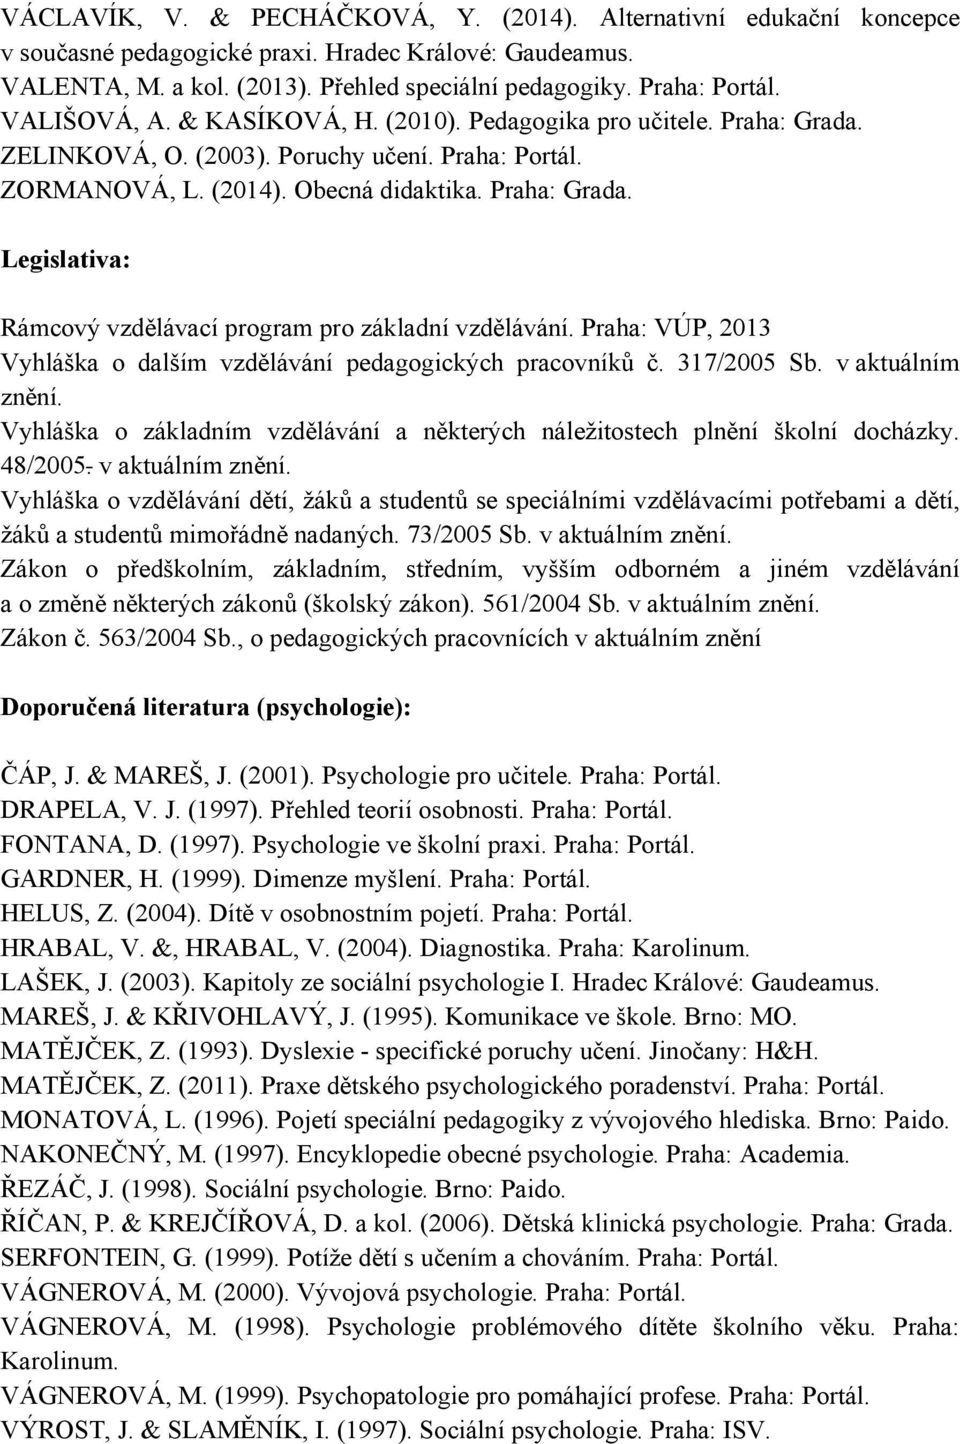 Praha: VÚP, 2013 Vyhláška o dalším vzdělávání pedagogických pracovníků č. 317/2005 Sb. v aktuálním znění. Vyhláška o základním vzdělávání a některých náležitostech plnění školní docházky. 48/2005.